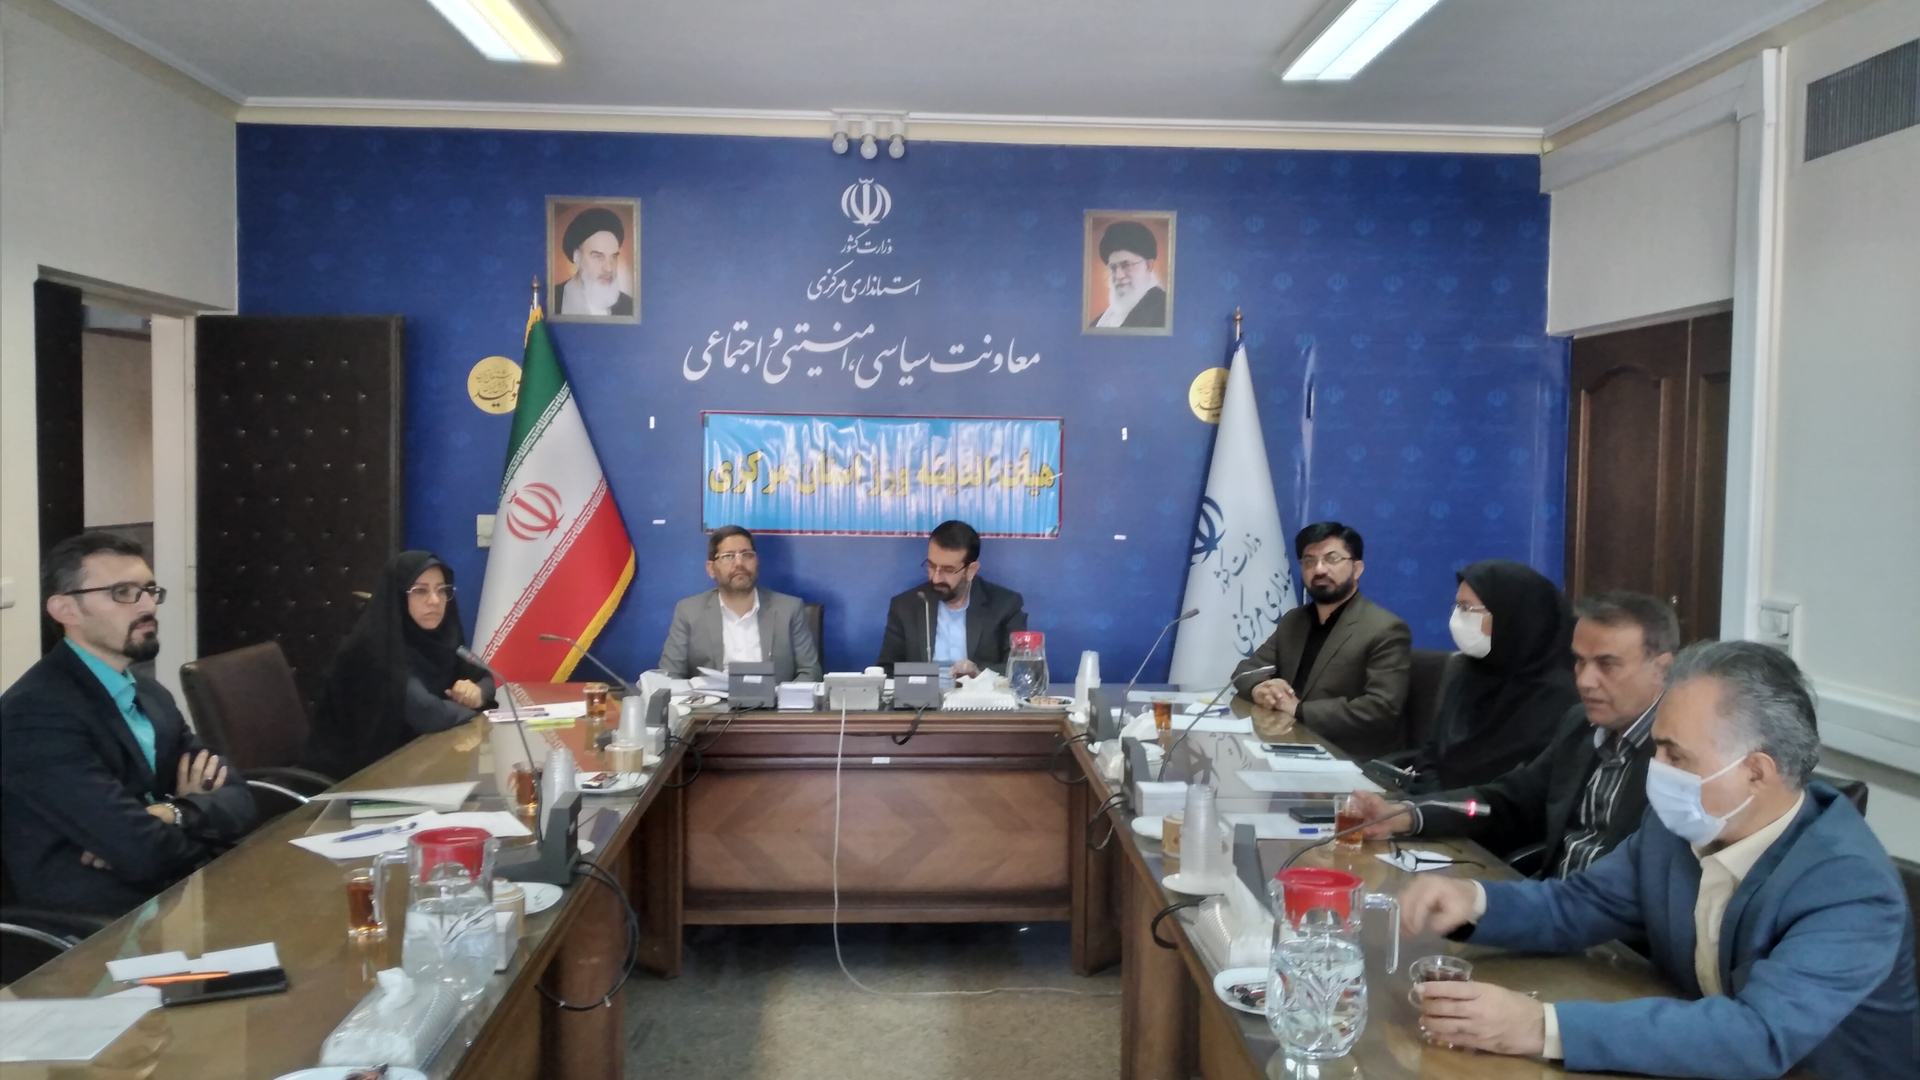 جلسه هیئت اندیشه ورز اجتماعی و فرهنگی استان برگزار شد